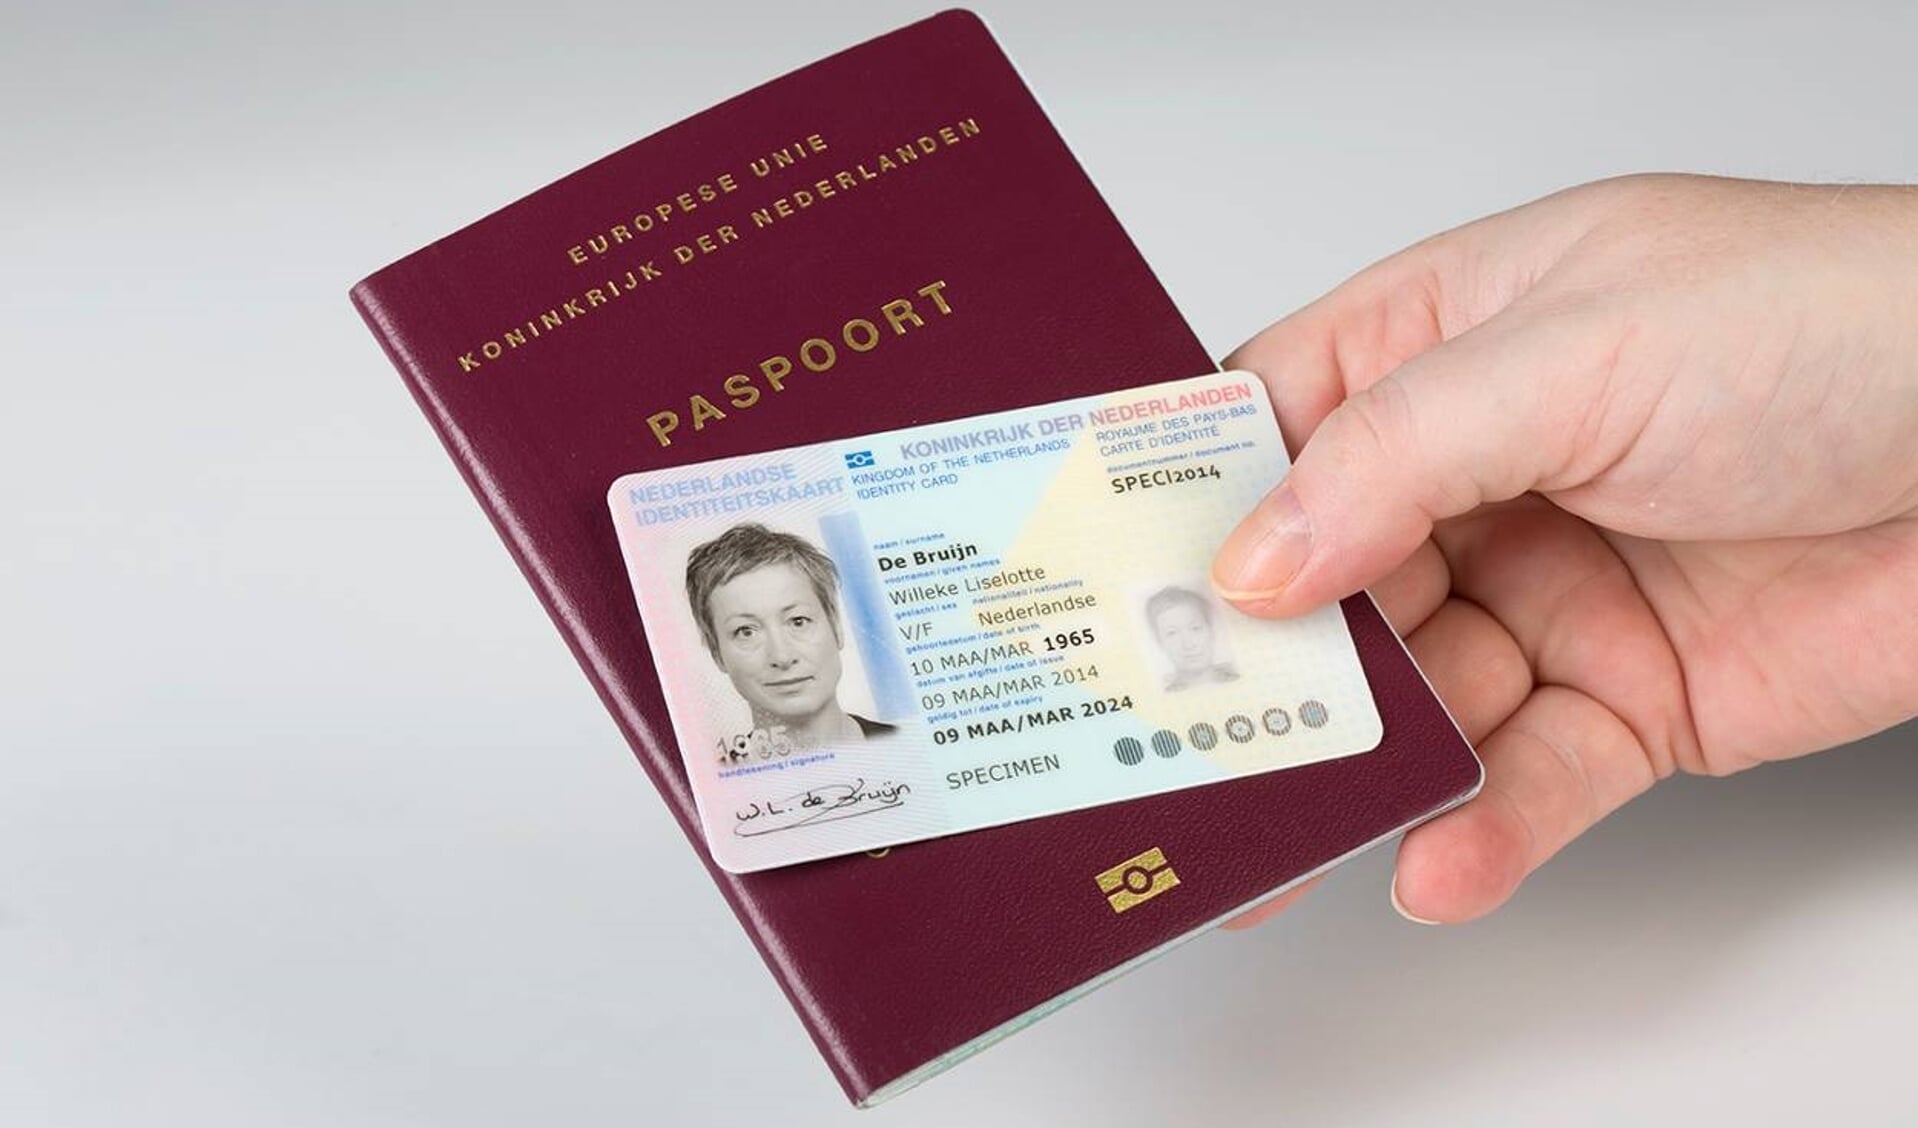 Paspoorten, identiteitskaarten en rijbewijzen worden duurder in 2021.